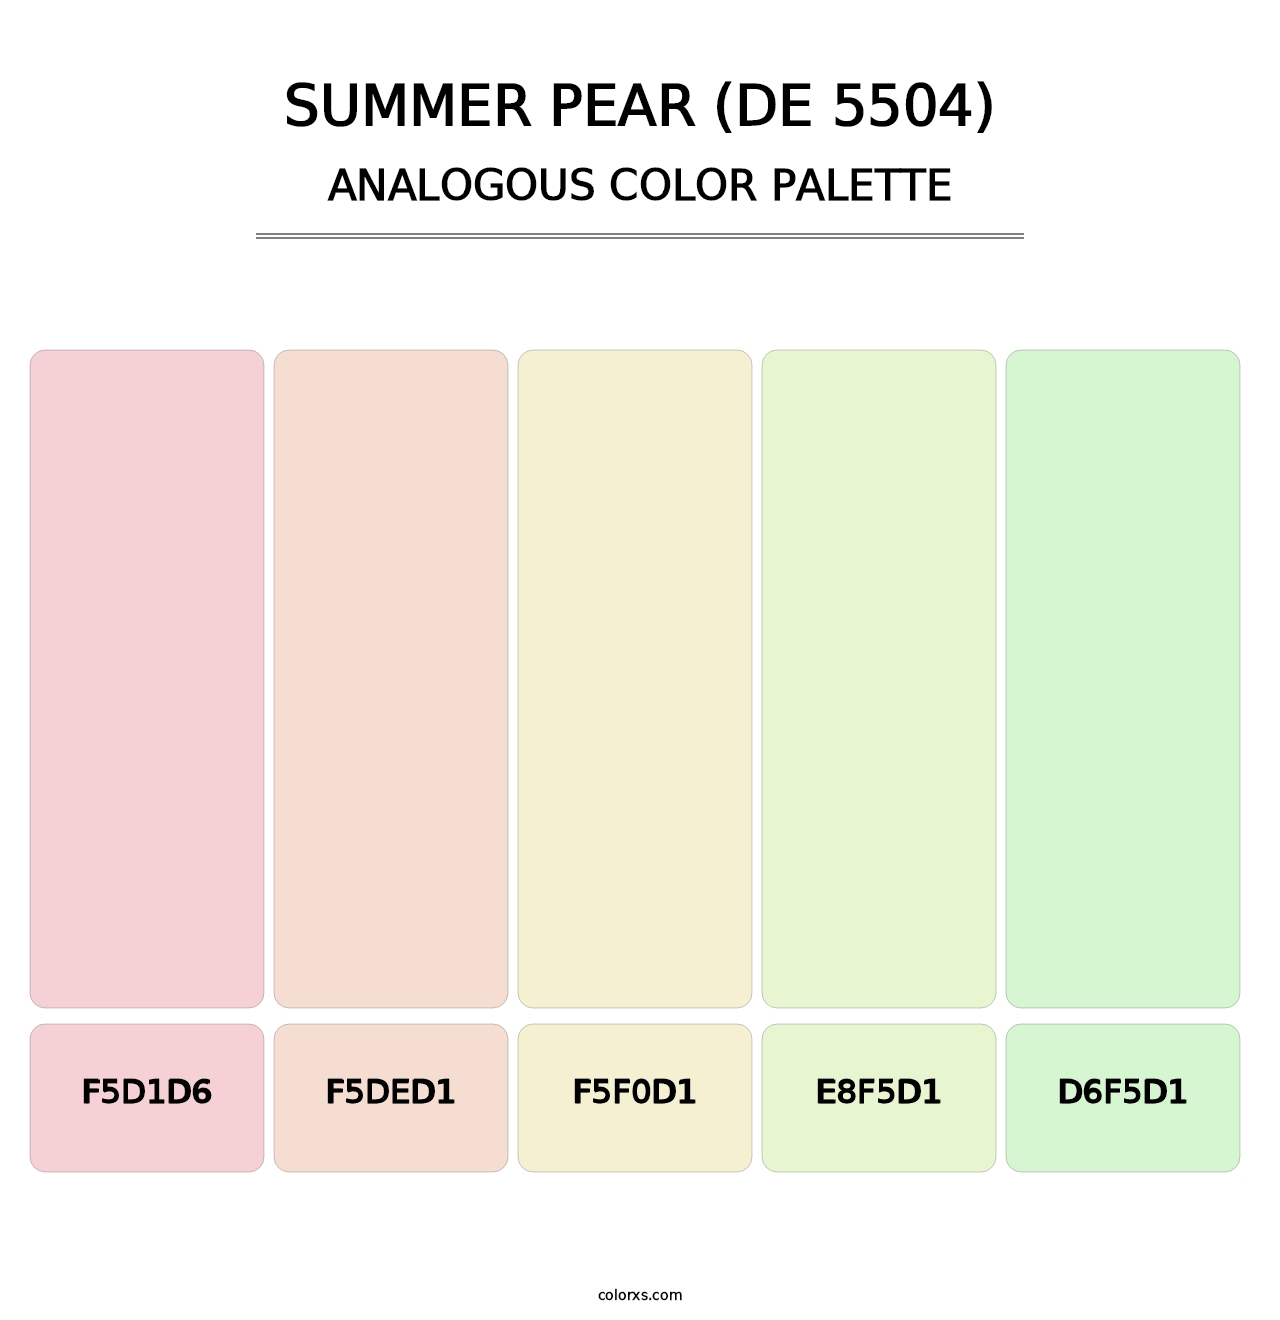 Summer Pear (DE 5504) - Analogous Color Palette